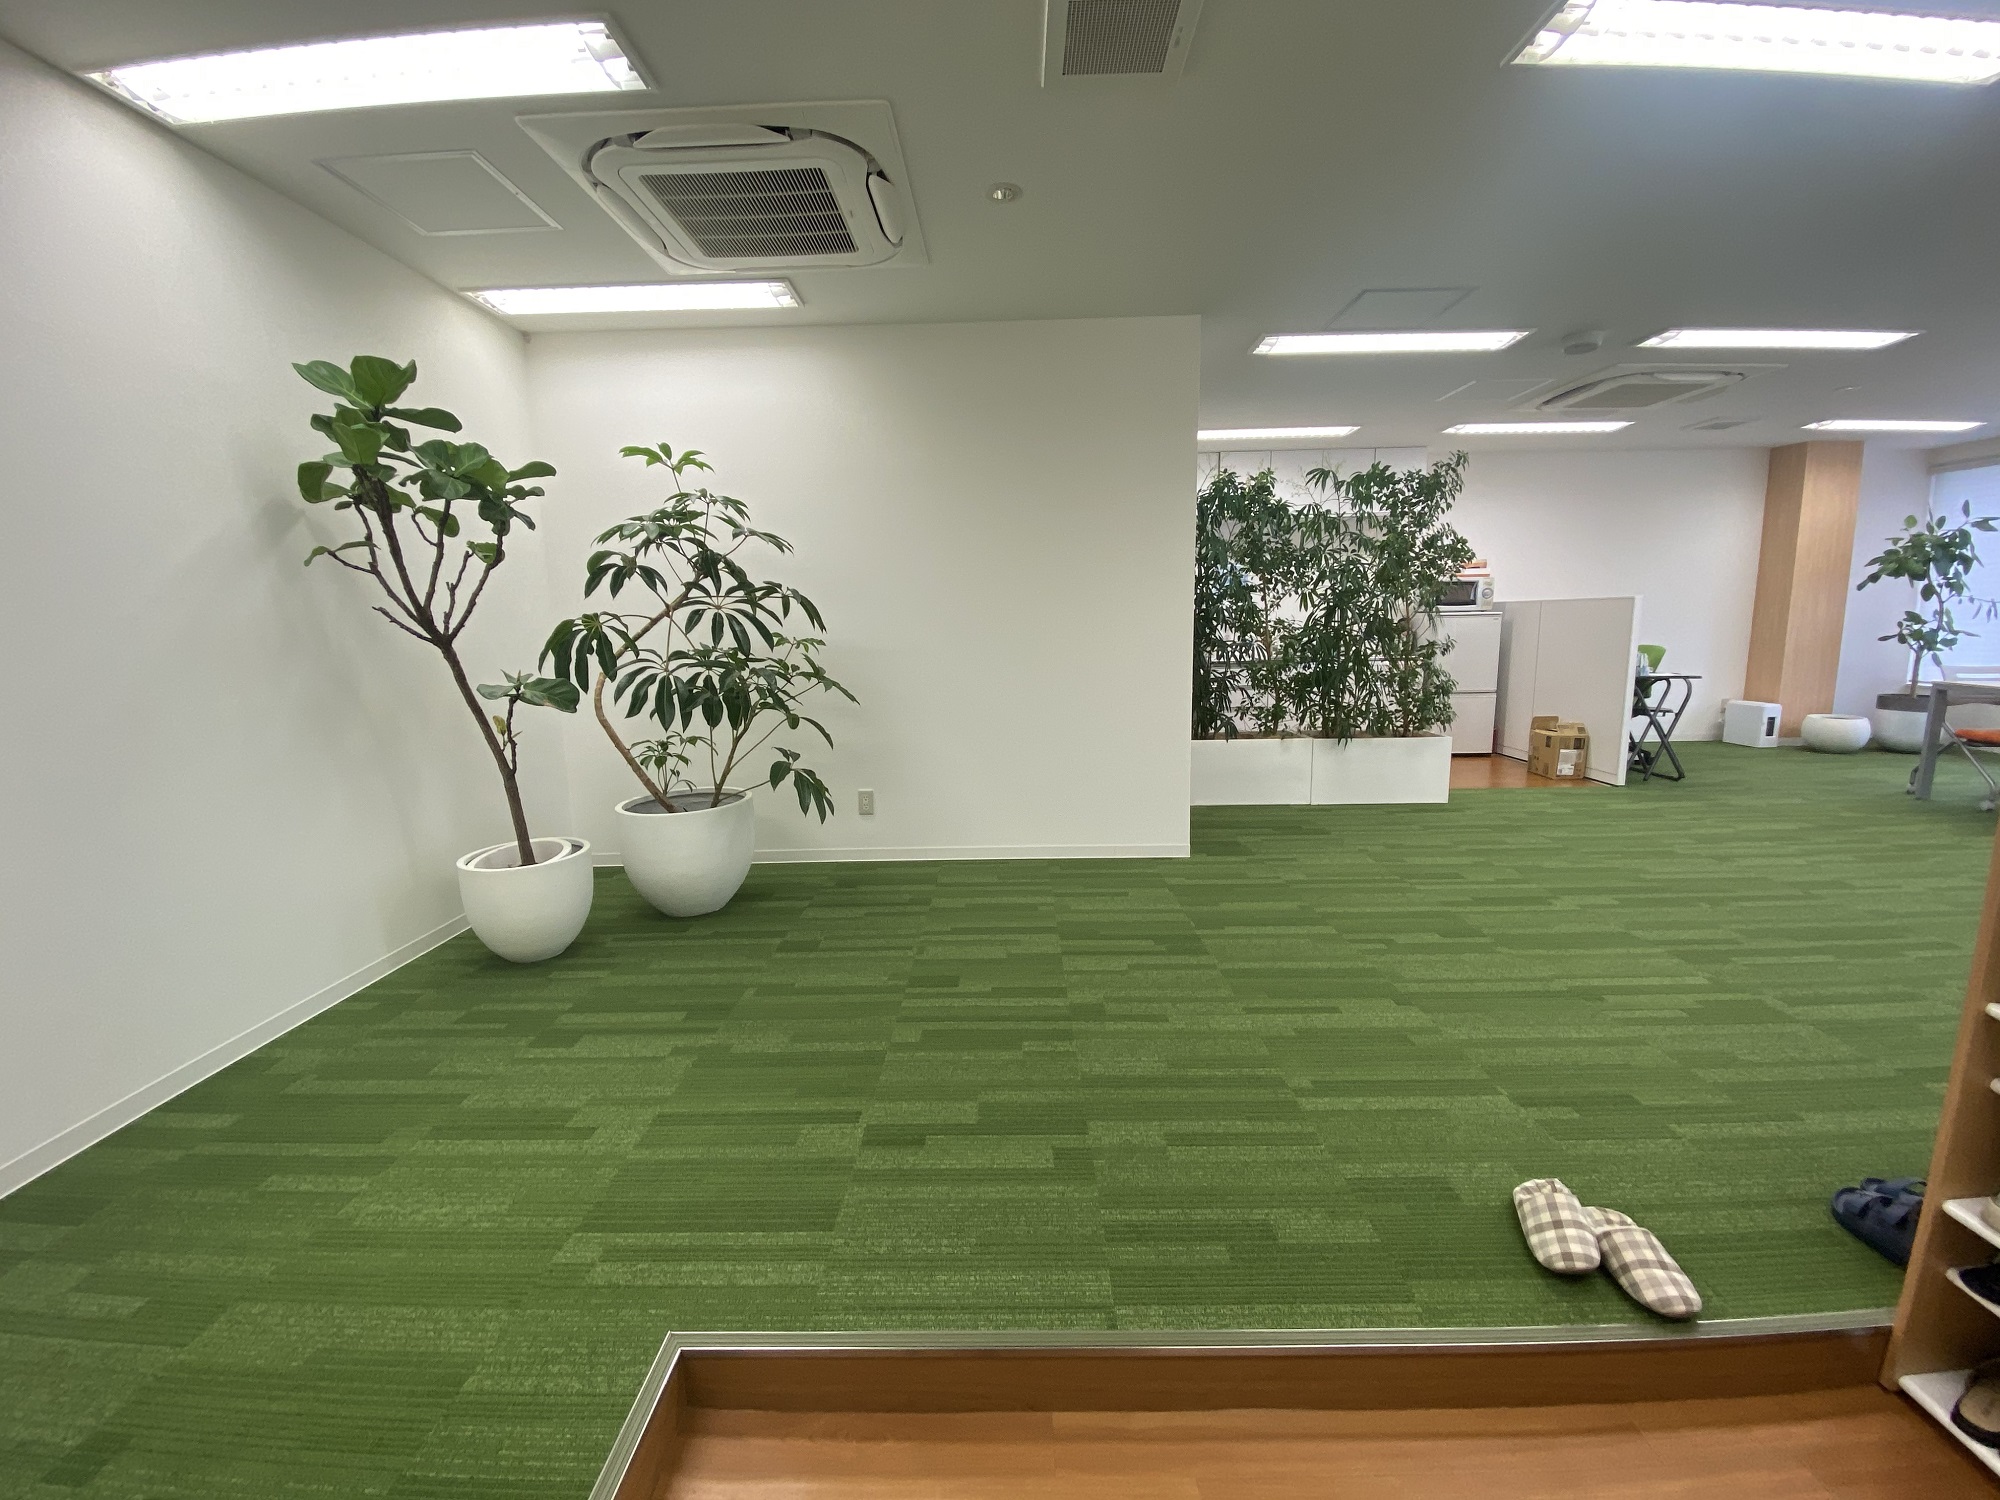 芝生のようなタイルカーペットを使った空間デザイン